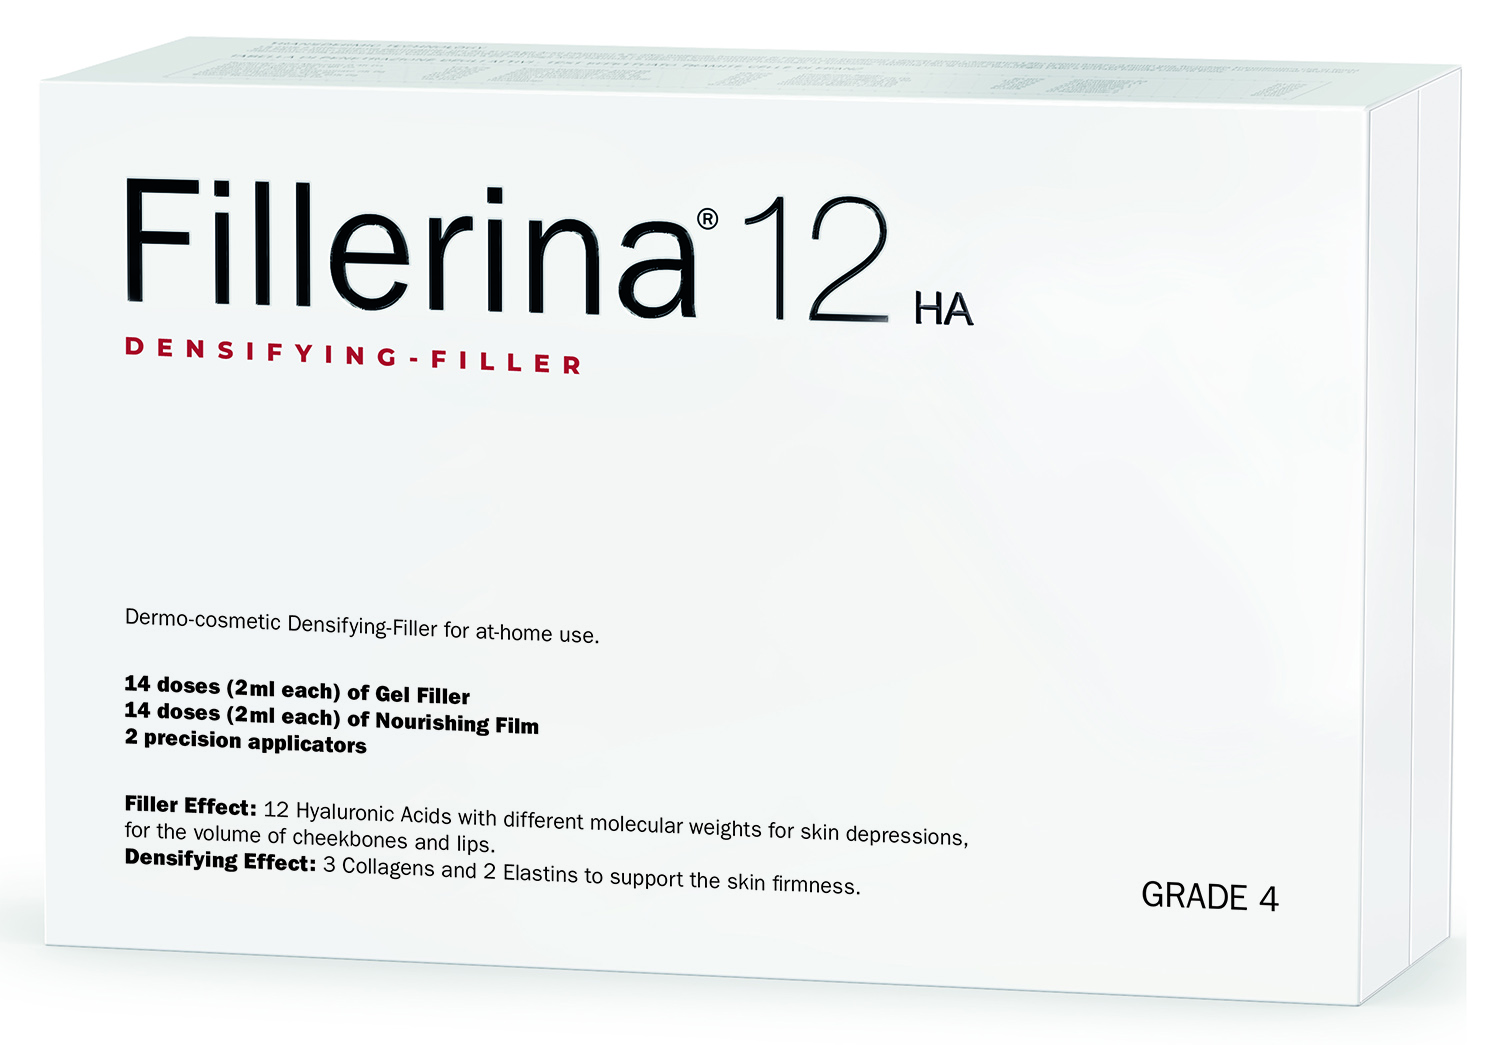 fillerina 12 ha densifying filler дермо косметический филлер с укрепляющим эффектом уровень 3 30 мл 30 мл Fillerina Дермо-косметический набор с укрепляющим эффектом Intensive уровень 4, 2 флакона х 30 мл (Fillerina, 12 HA Densifying-Filler)